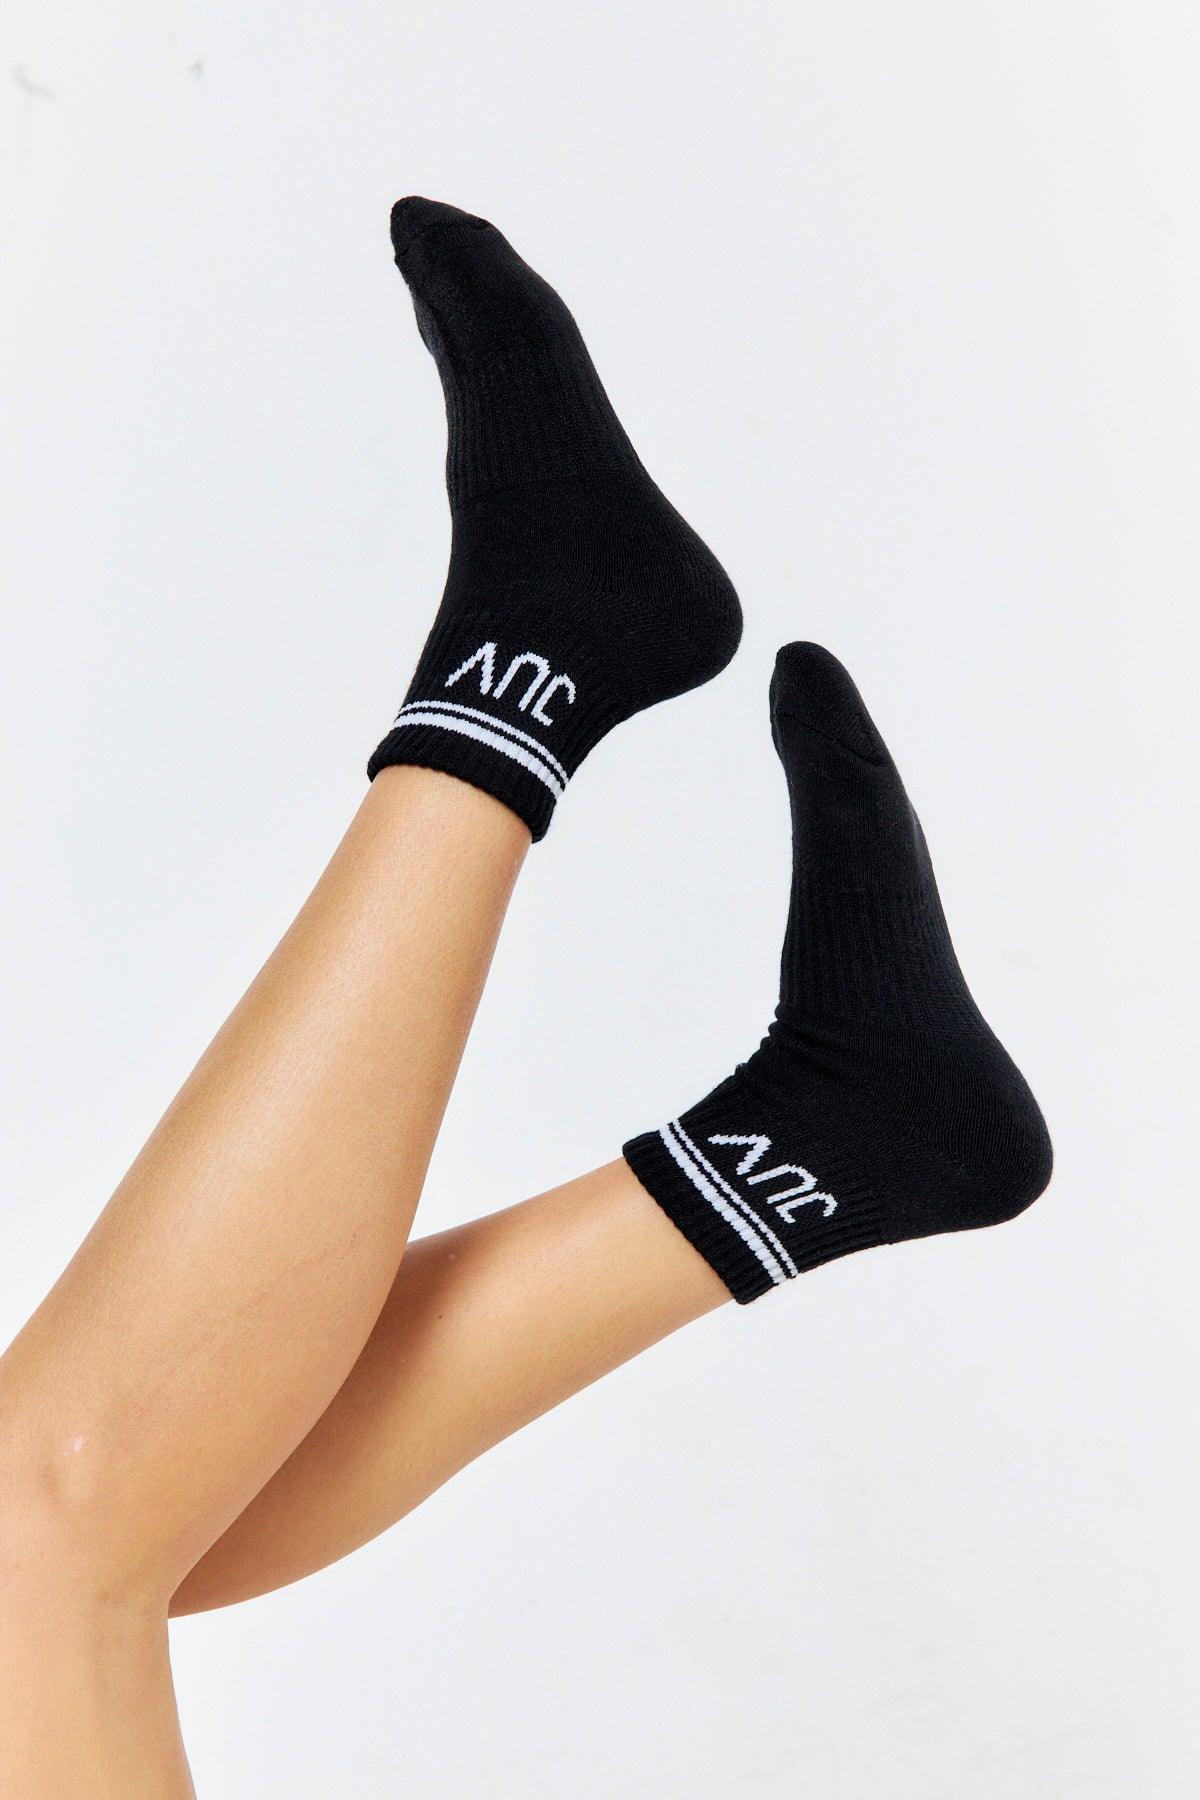 JUV quality ankle socks in black. 